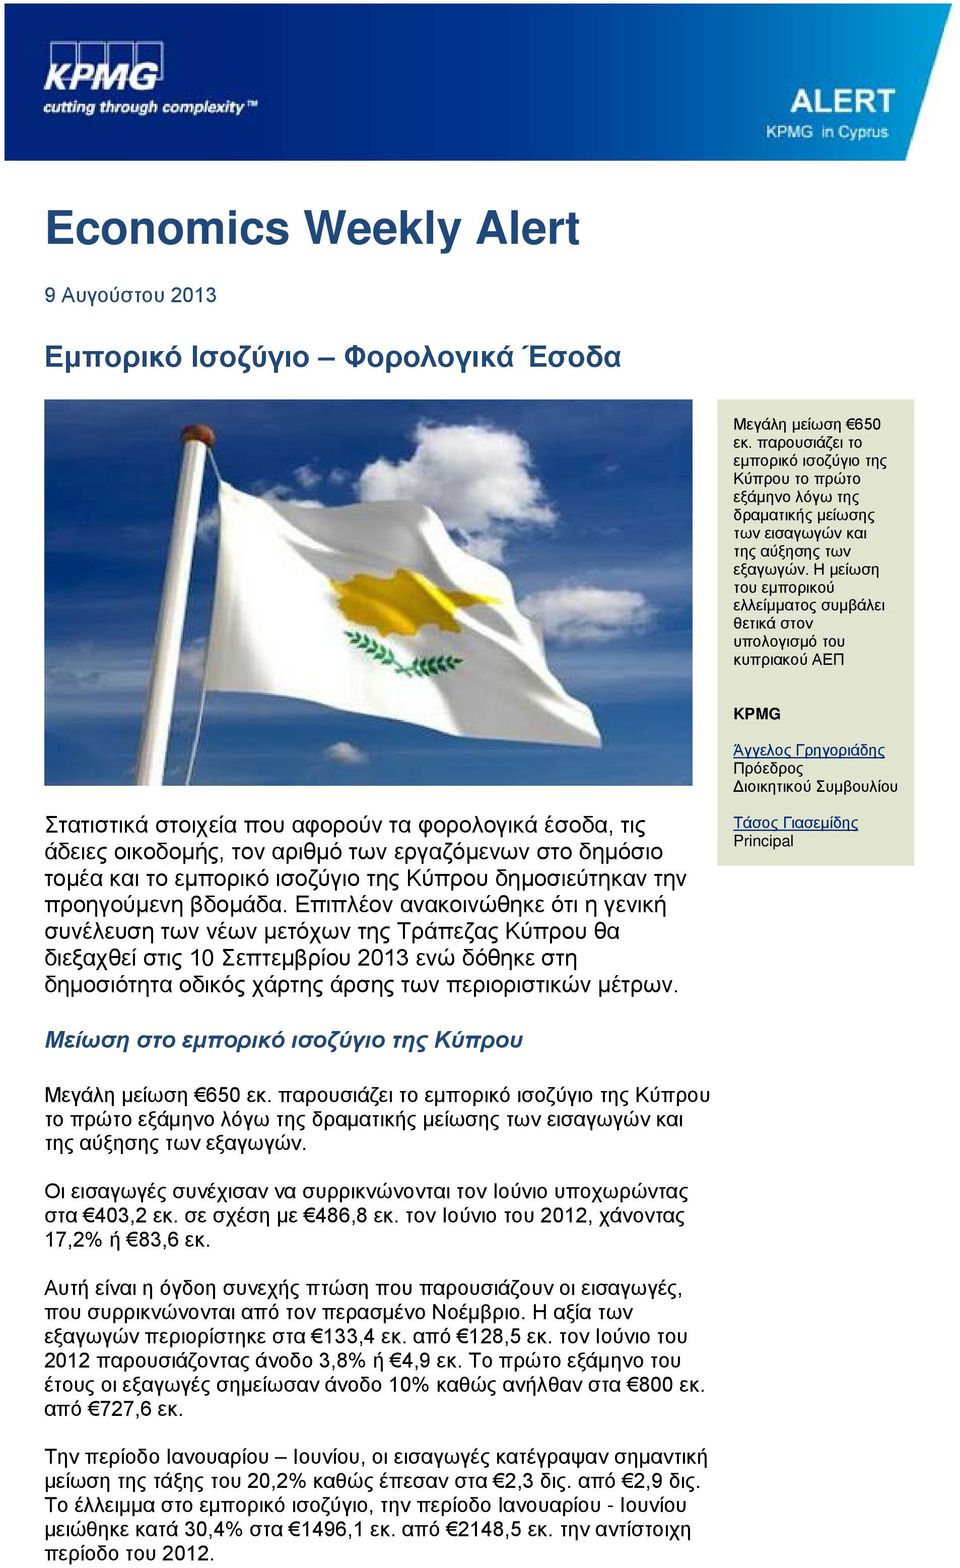 Η μείωση του εμπορικού ελλείμματος συμβάλει θετικά στον υπολογισμό του κυπριακού ΑΕΠ KPMG Άγγελος Γρηγοριάδης Πρόεδρος Διοικητικού Συμβουλίου Στατιστικά στοιχεία που αφορούν τα φορολογικά έσοδα, τις